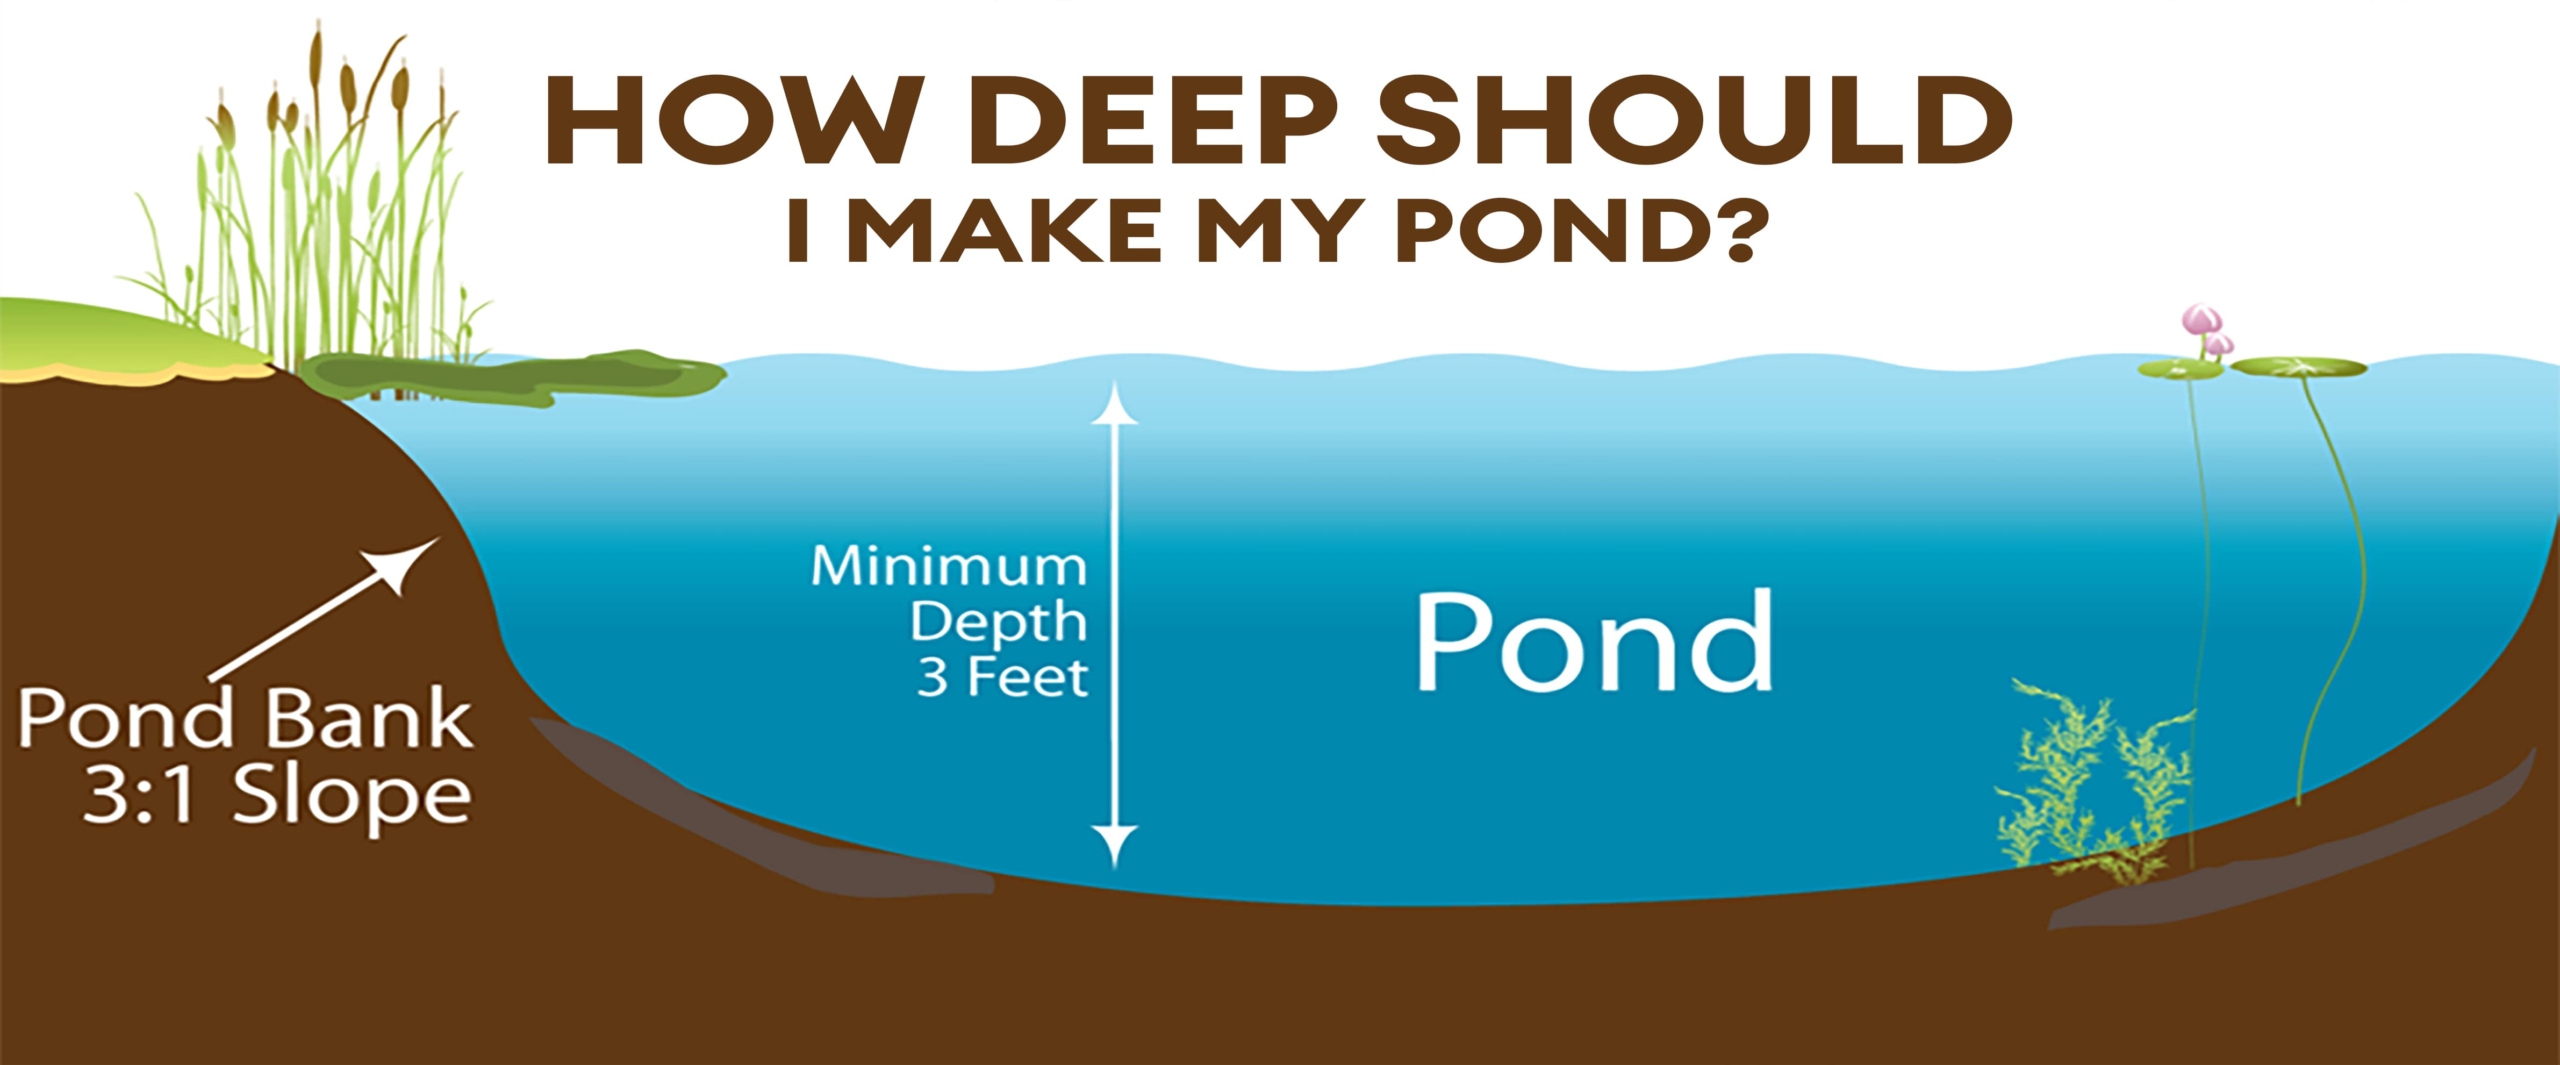 How deep should I make my pond-min